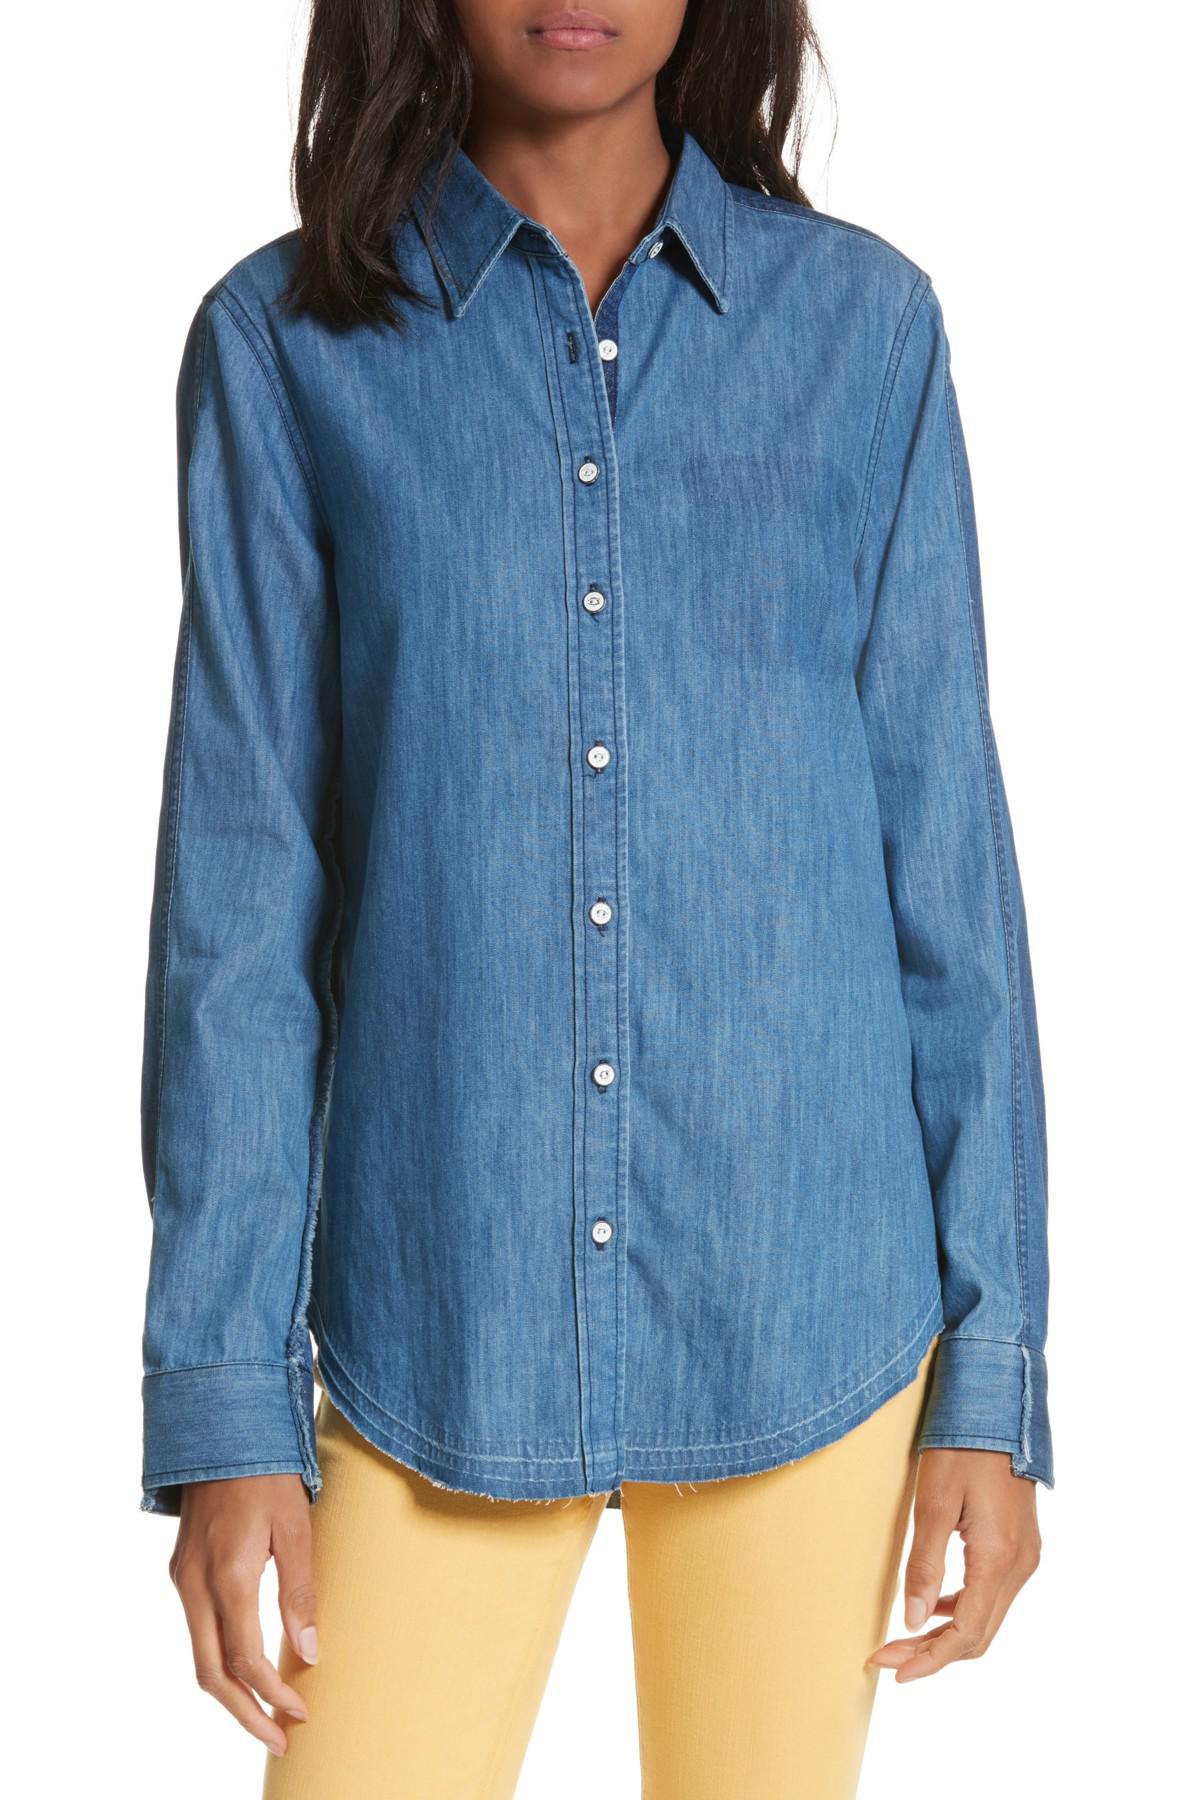 Rag & Bone Destroyed Classic Denim Shirt in Blue - Lyst